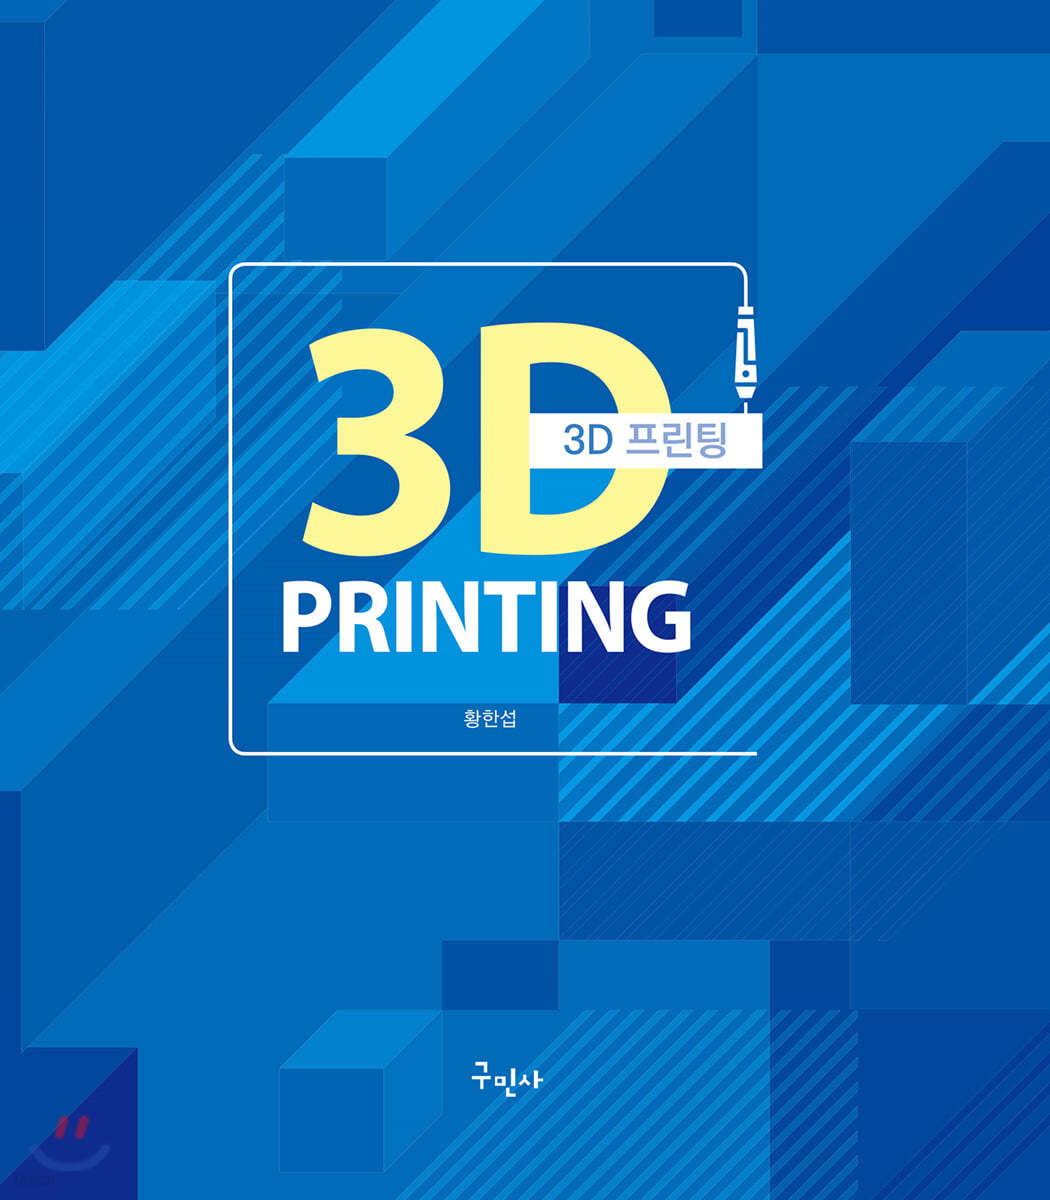  3D 프린팅